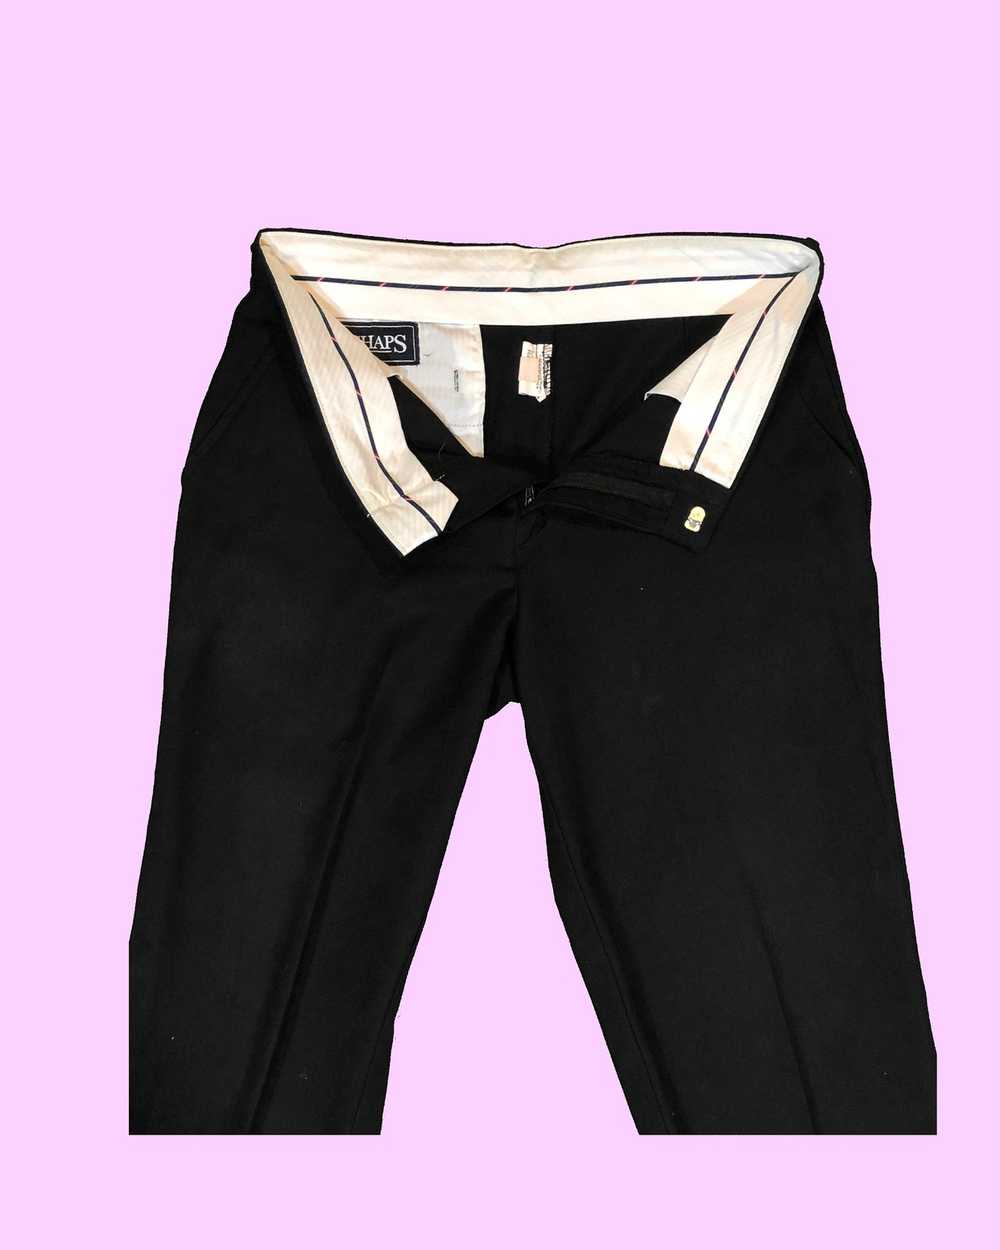 Vintage Vintage Cropped Trouser - image 3